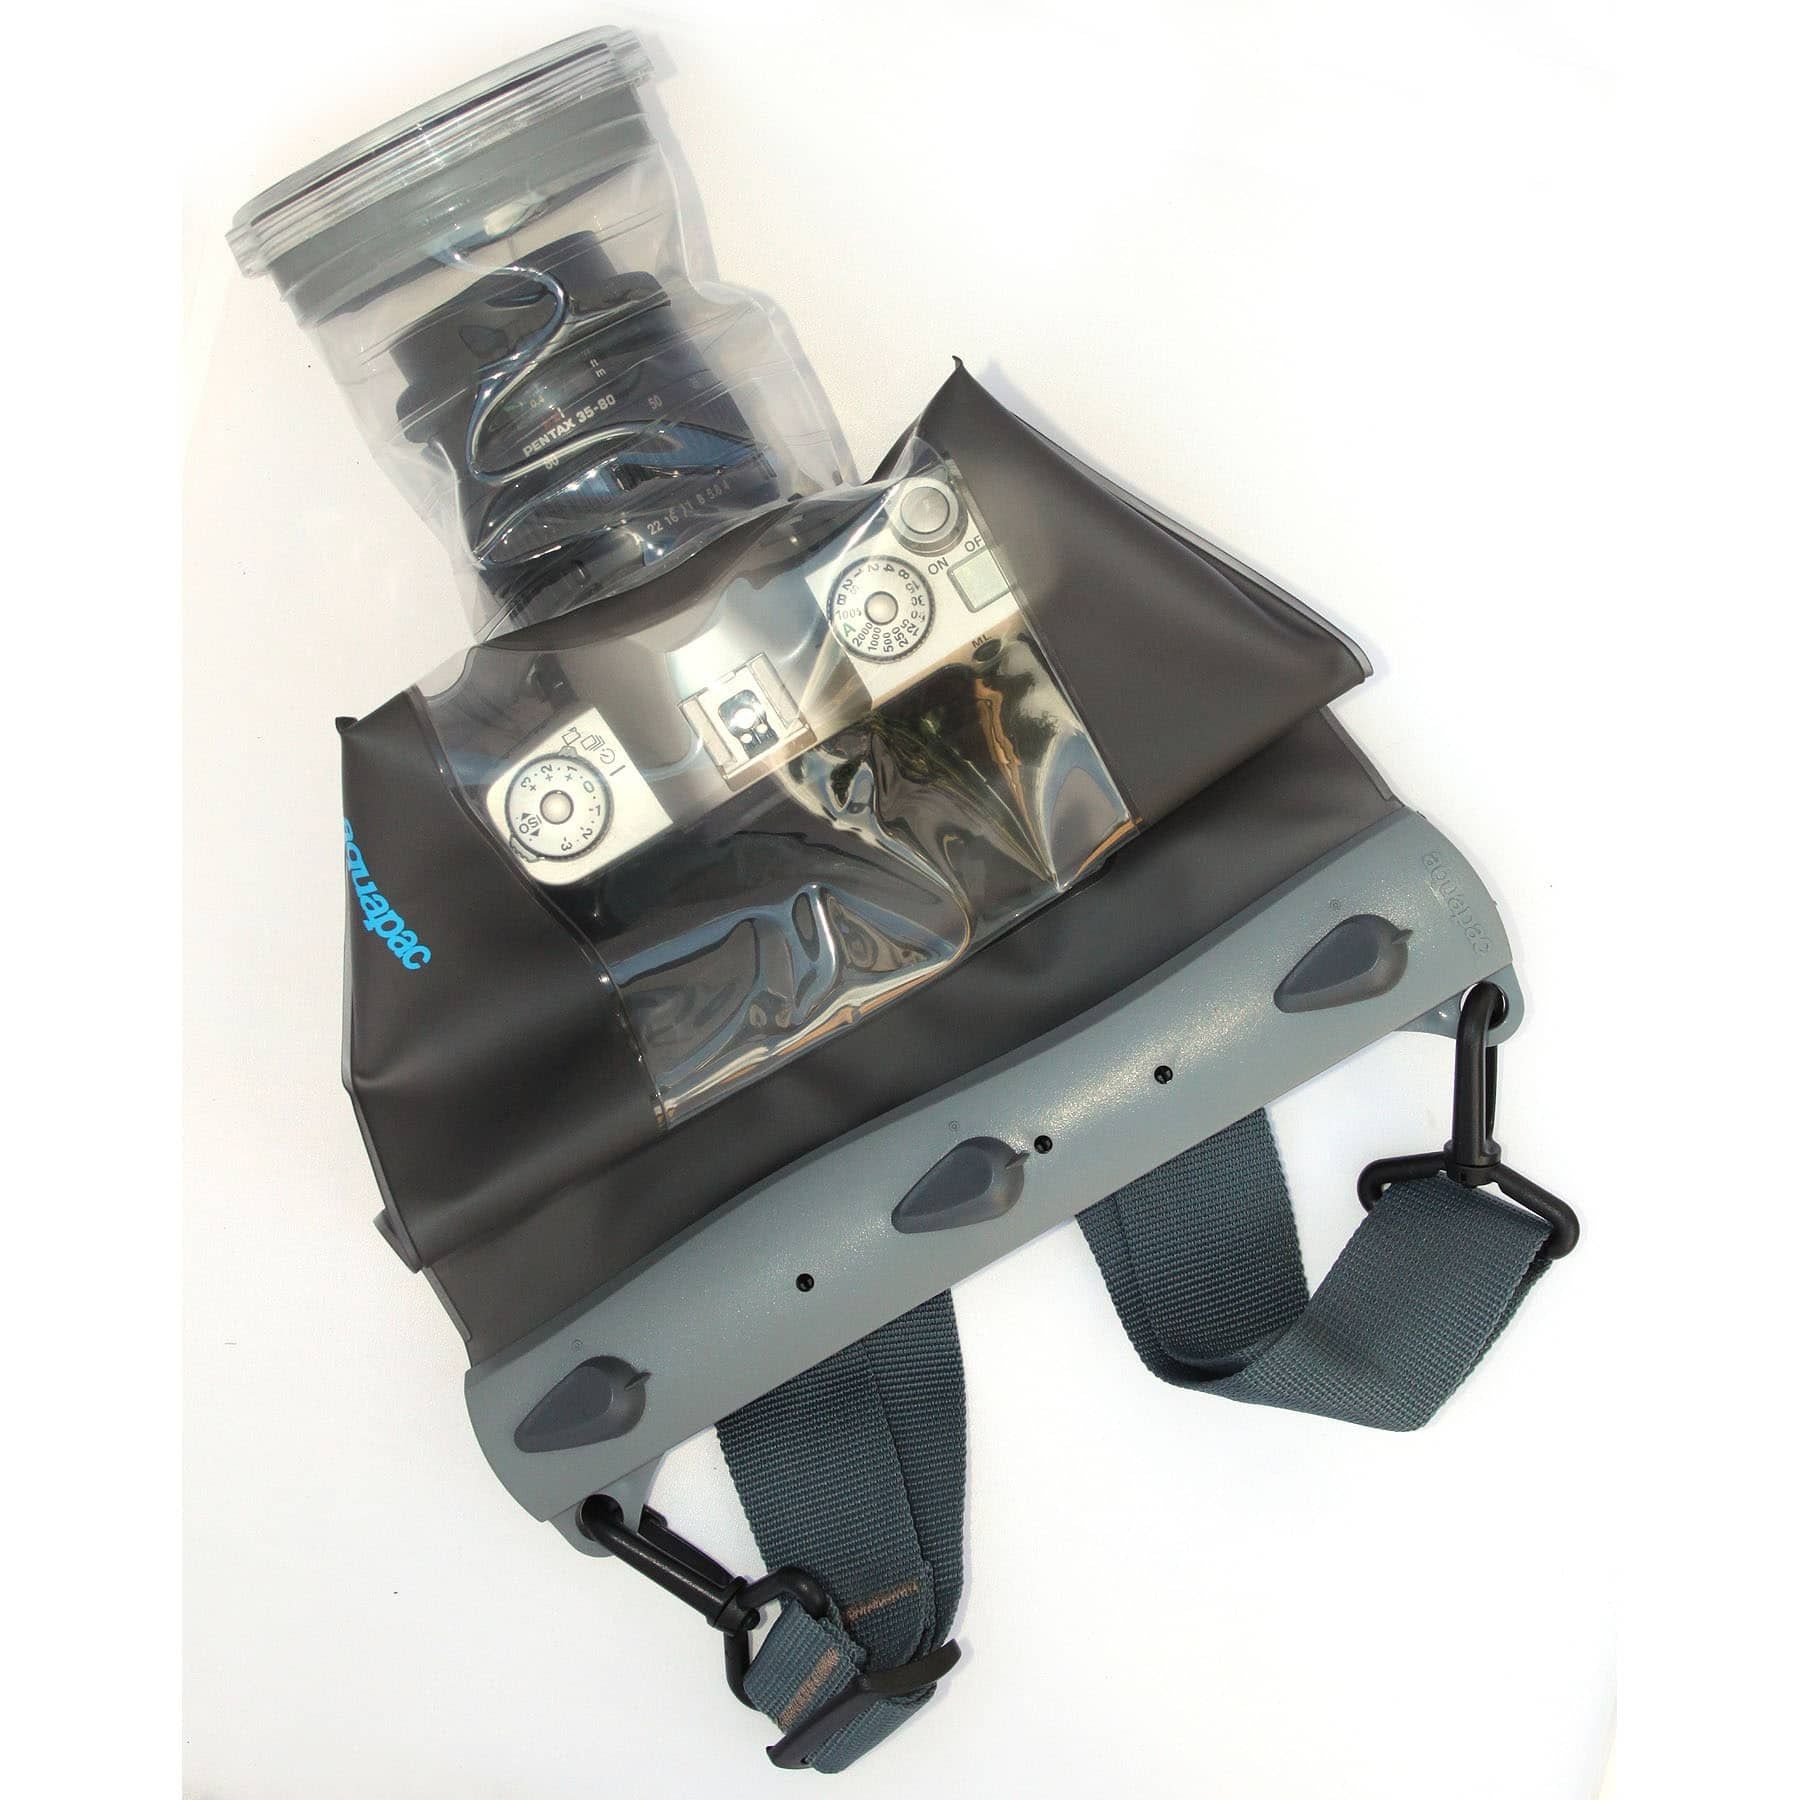 Aquapac Waterproof Case for DSLR Camera